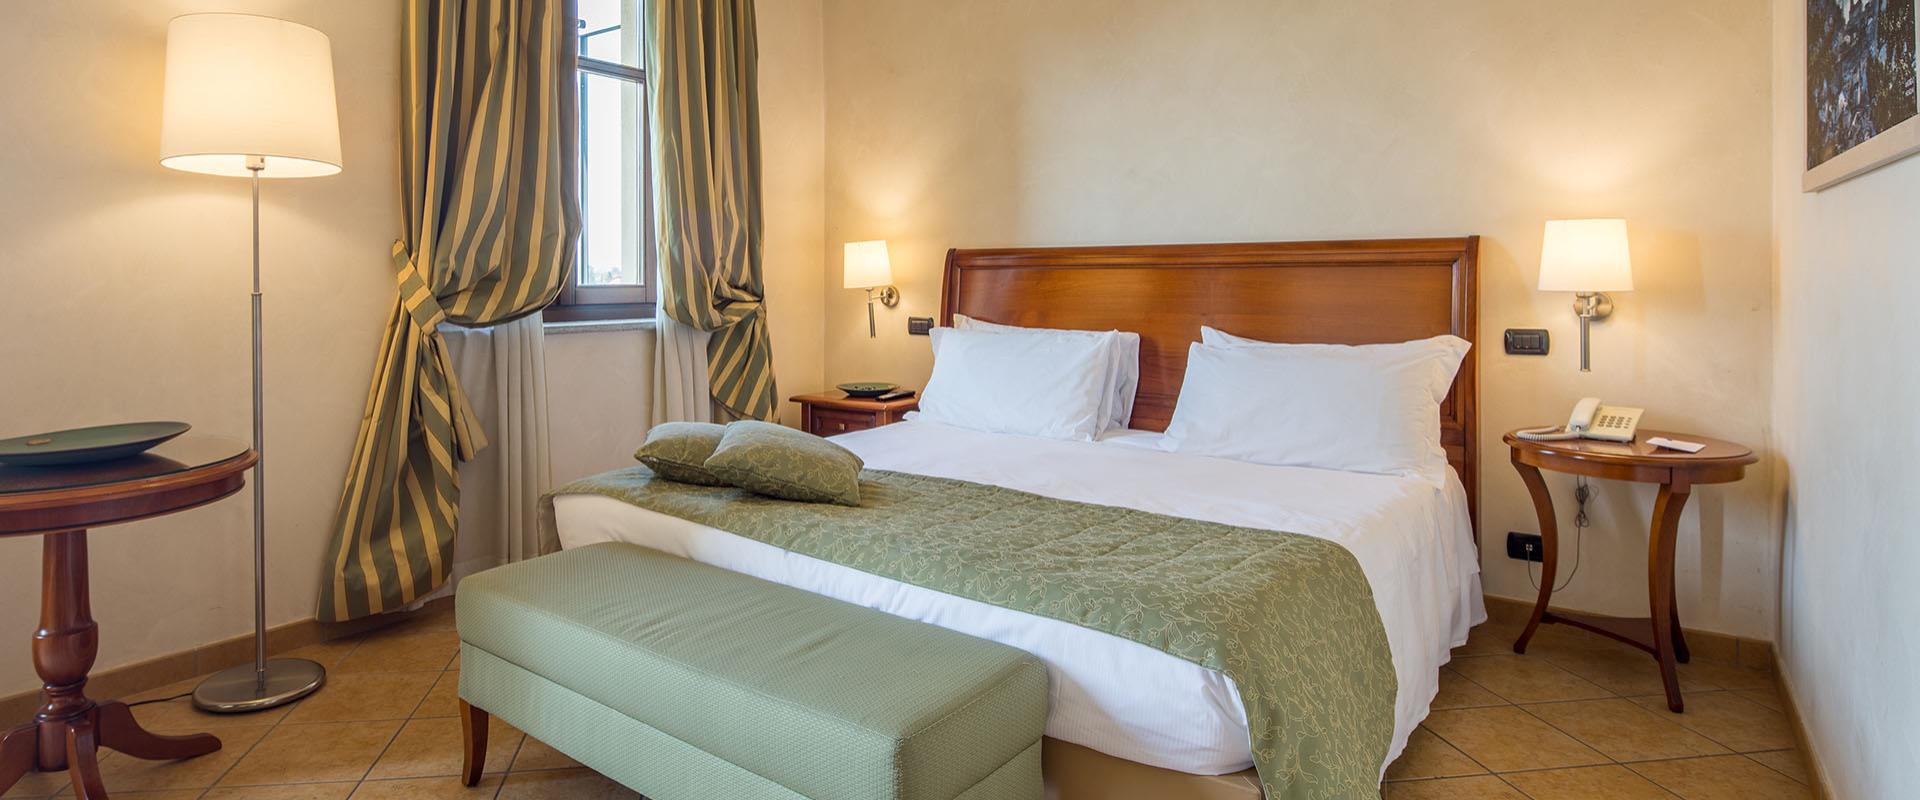 Cerchi un hotel per il tuo soggiorno vicino all aeroporto di Torino Caselle? Prenota al Best Western Plus Hotel Le Rondini